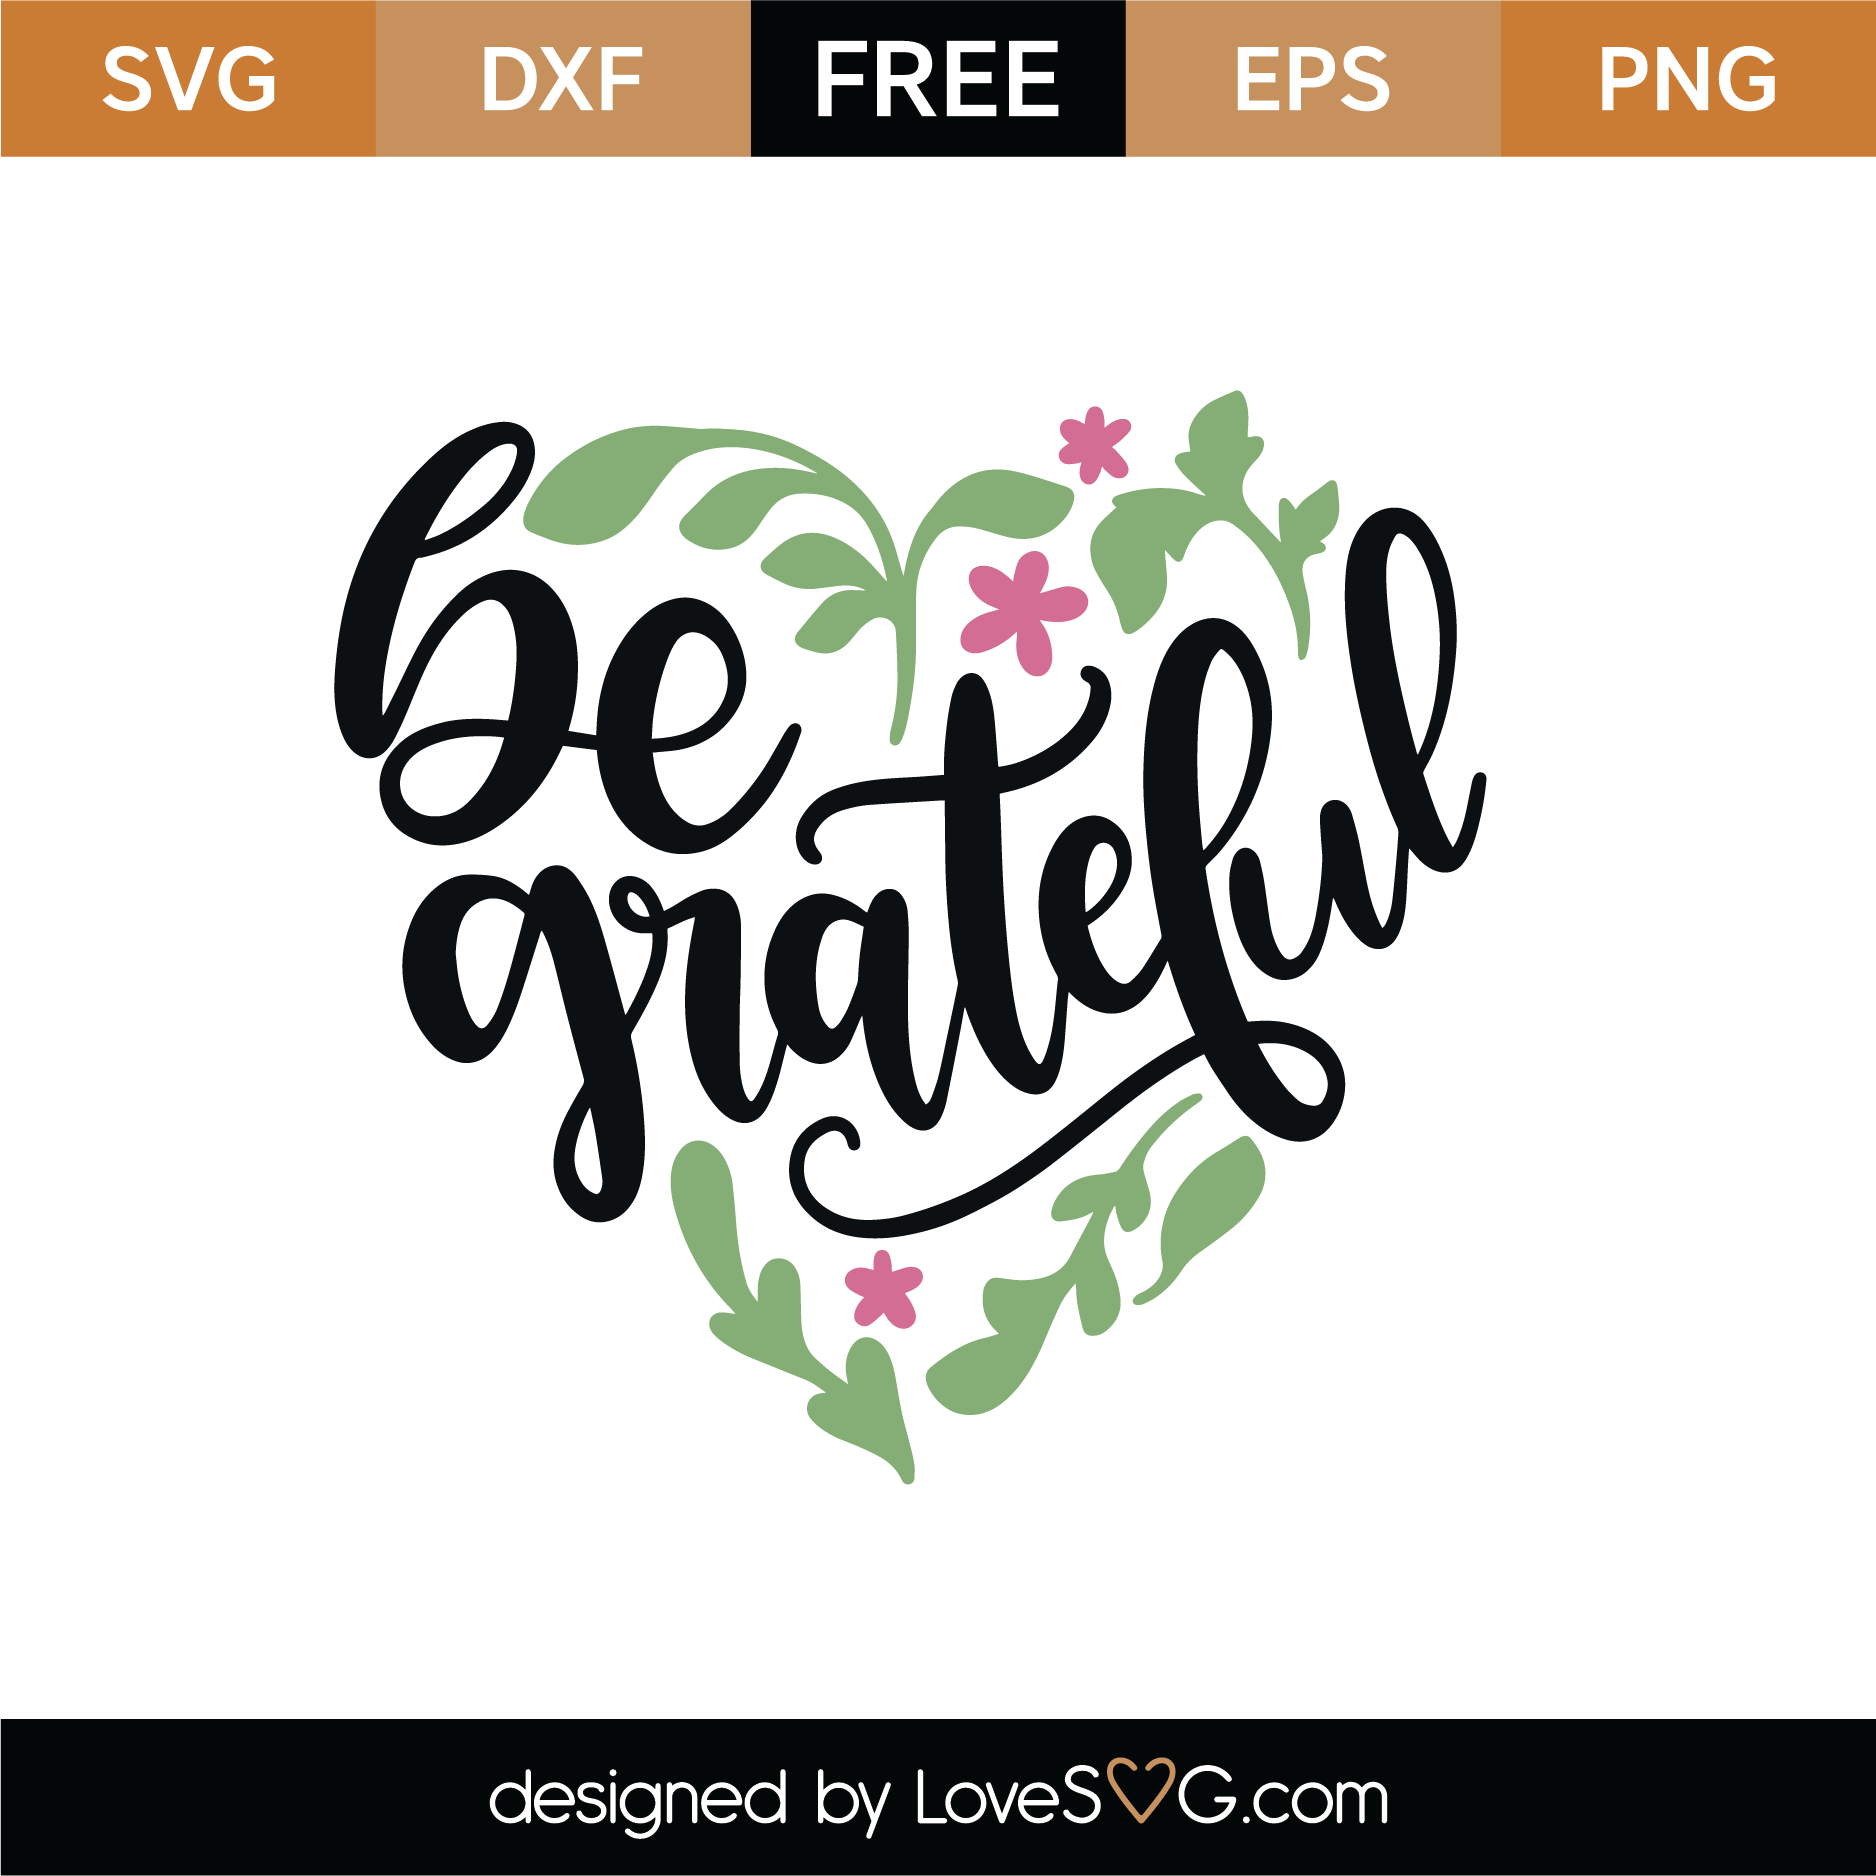 Download Free Be Grateful SVG Cut File | Lovesvg.com